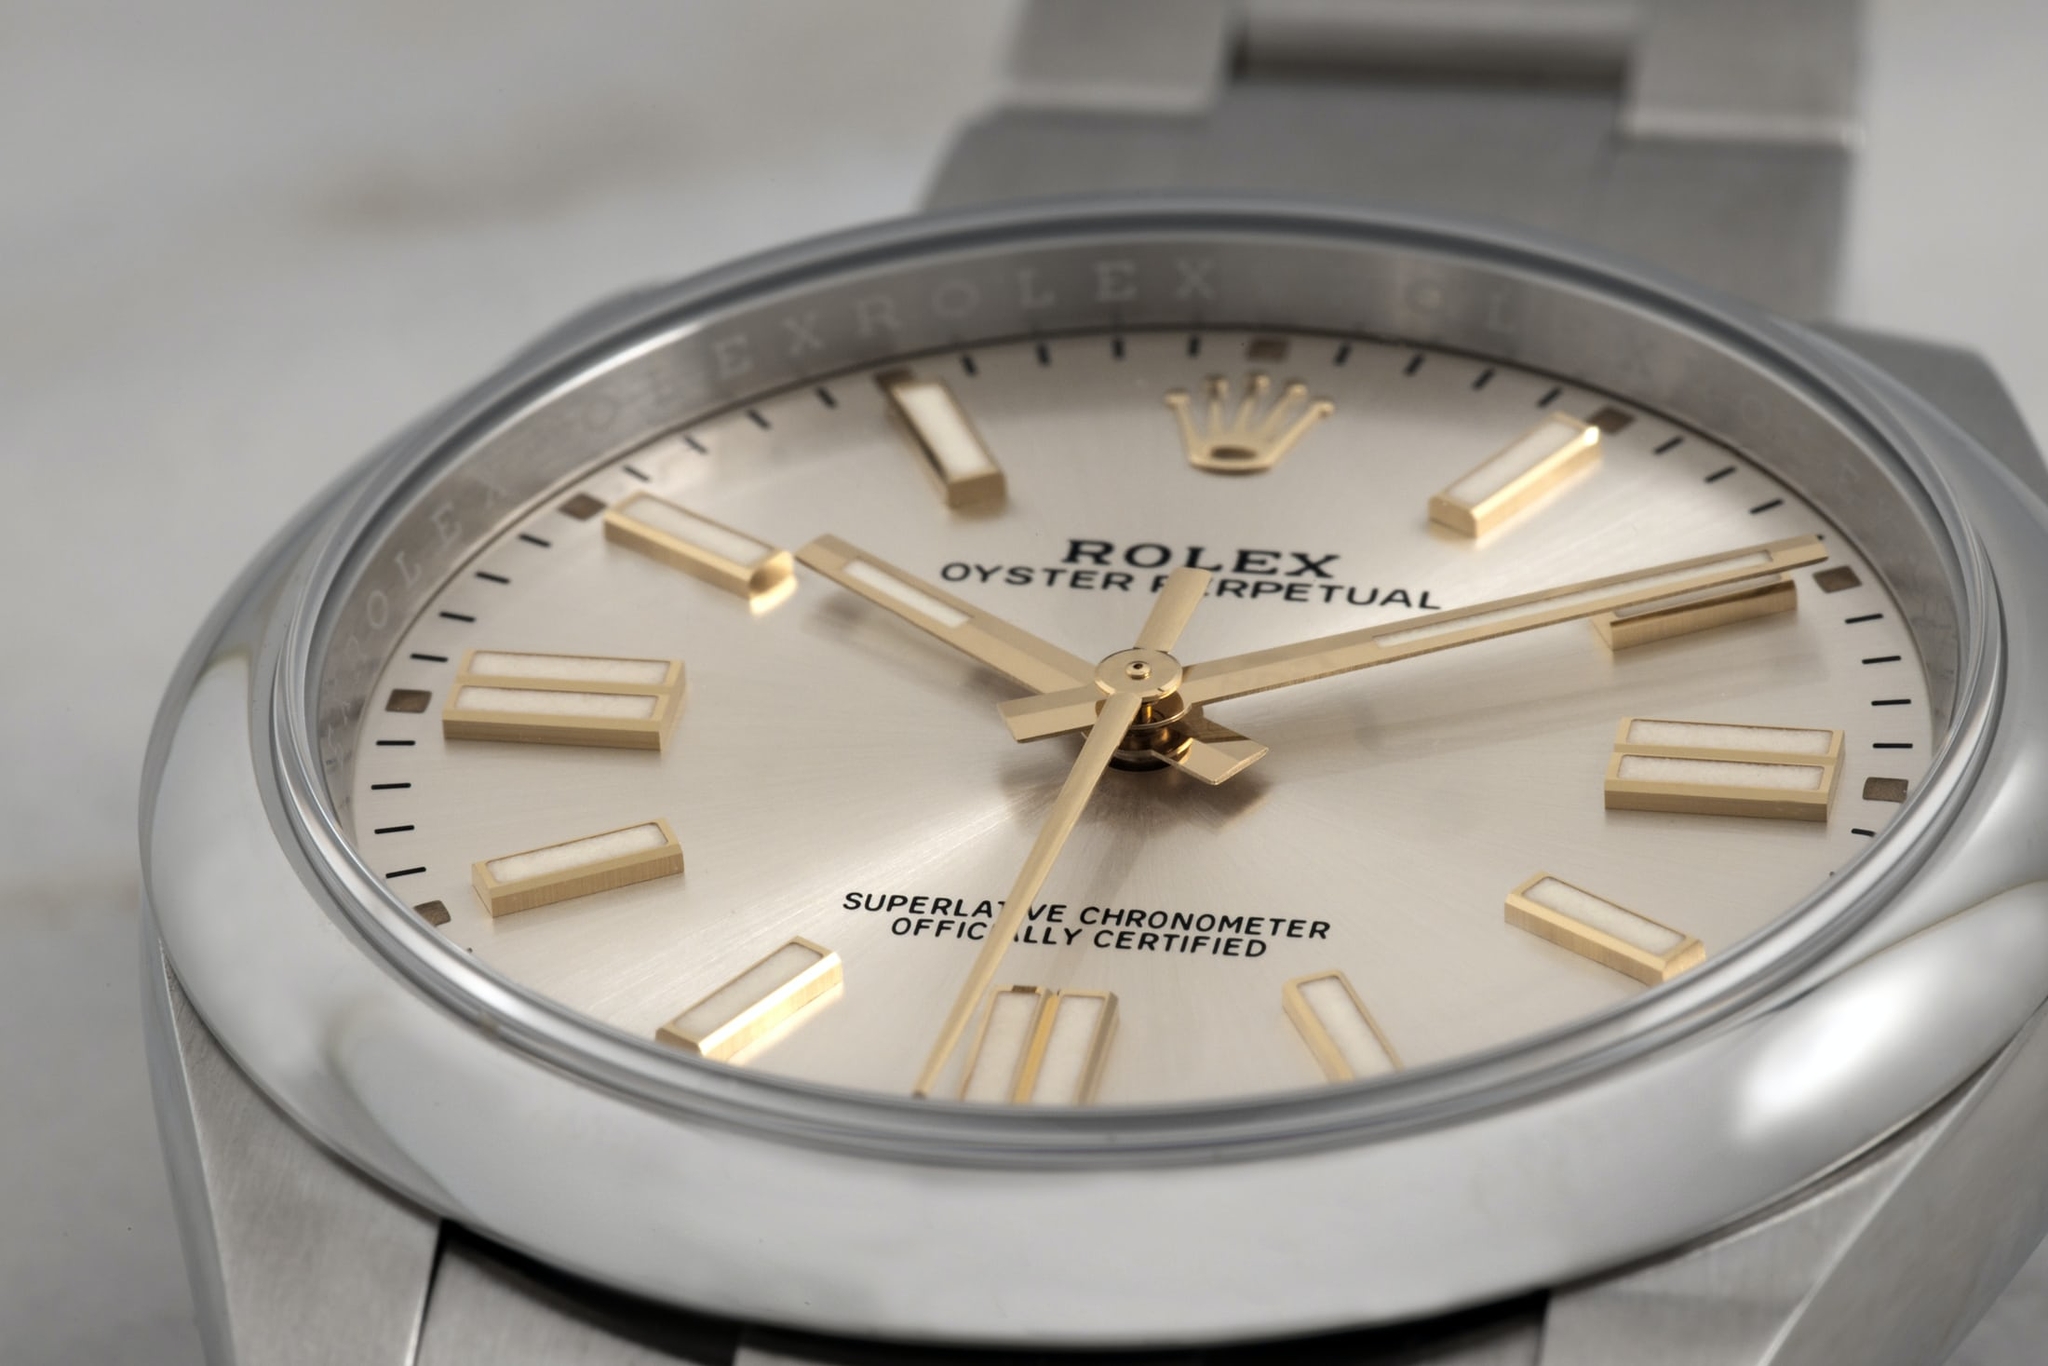 Đâu là đồng hồ Rolex Oyster Perpetual 2020 phù hợp nhất dành cho bạn?